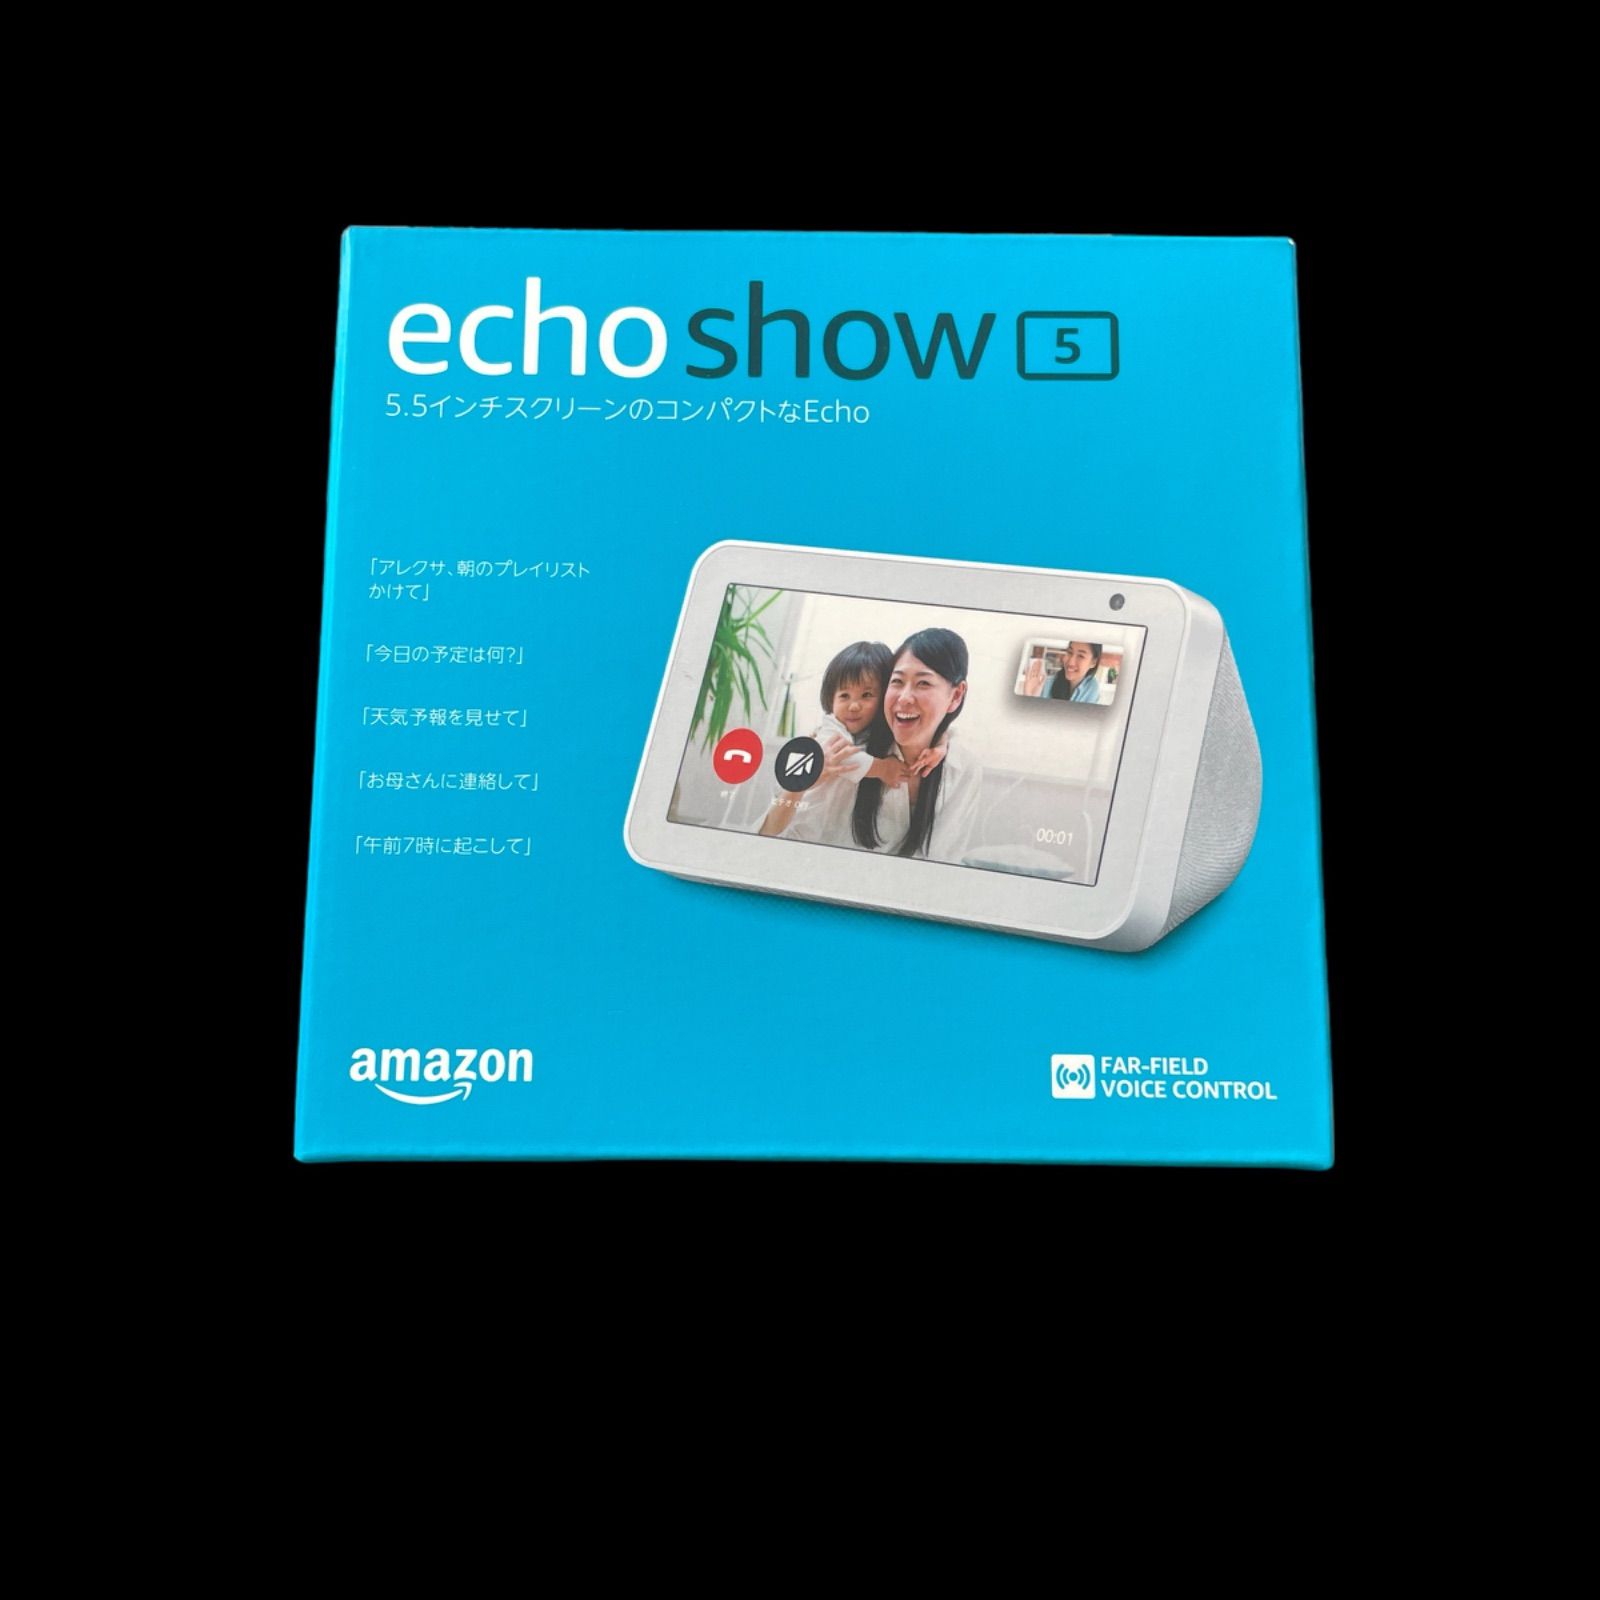 Echo show5 新品未開封